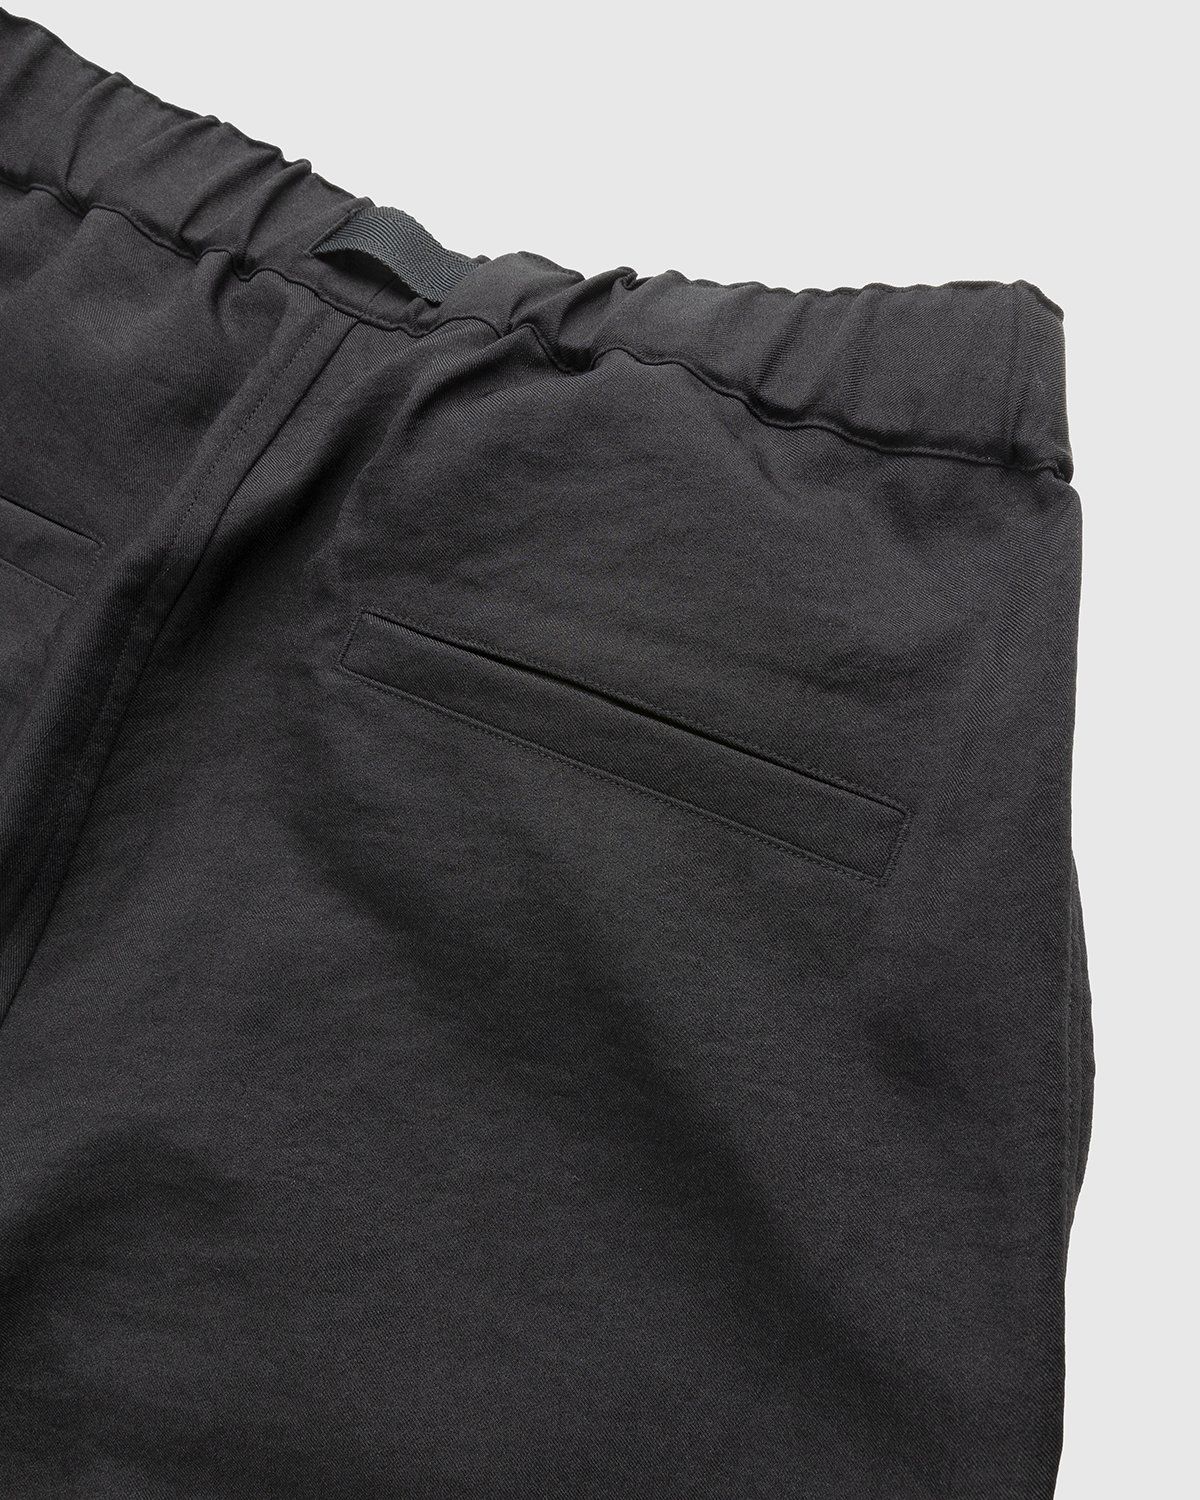 Y-3 – Classic Sport Uniform Cargo Pants Black - Cargo Pants - Black - Image 4